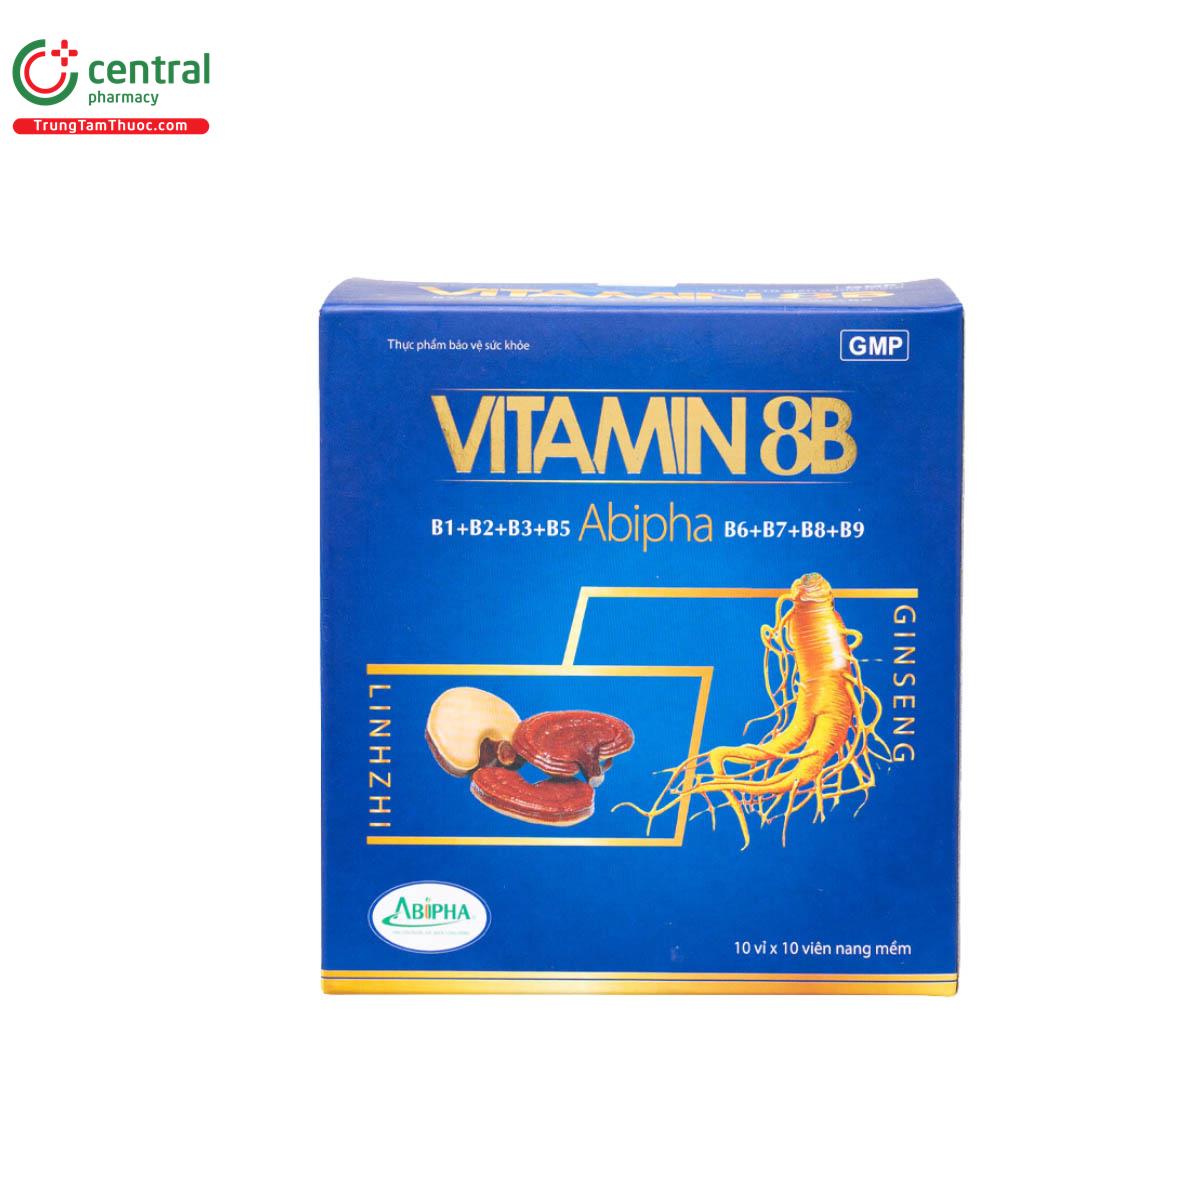 Vitamin 8B Abipha